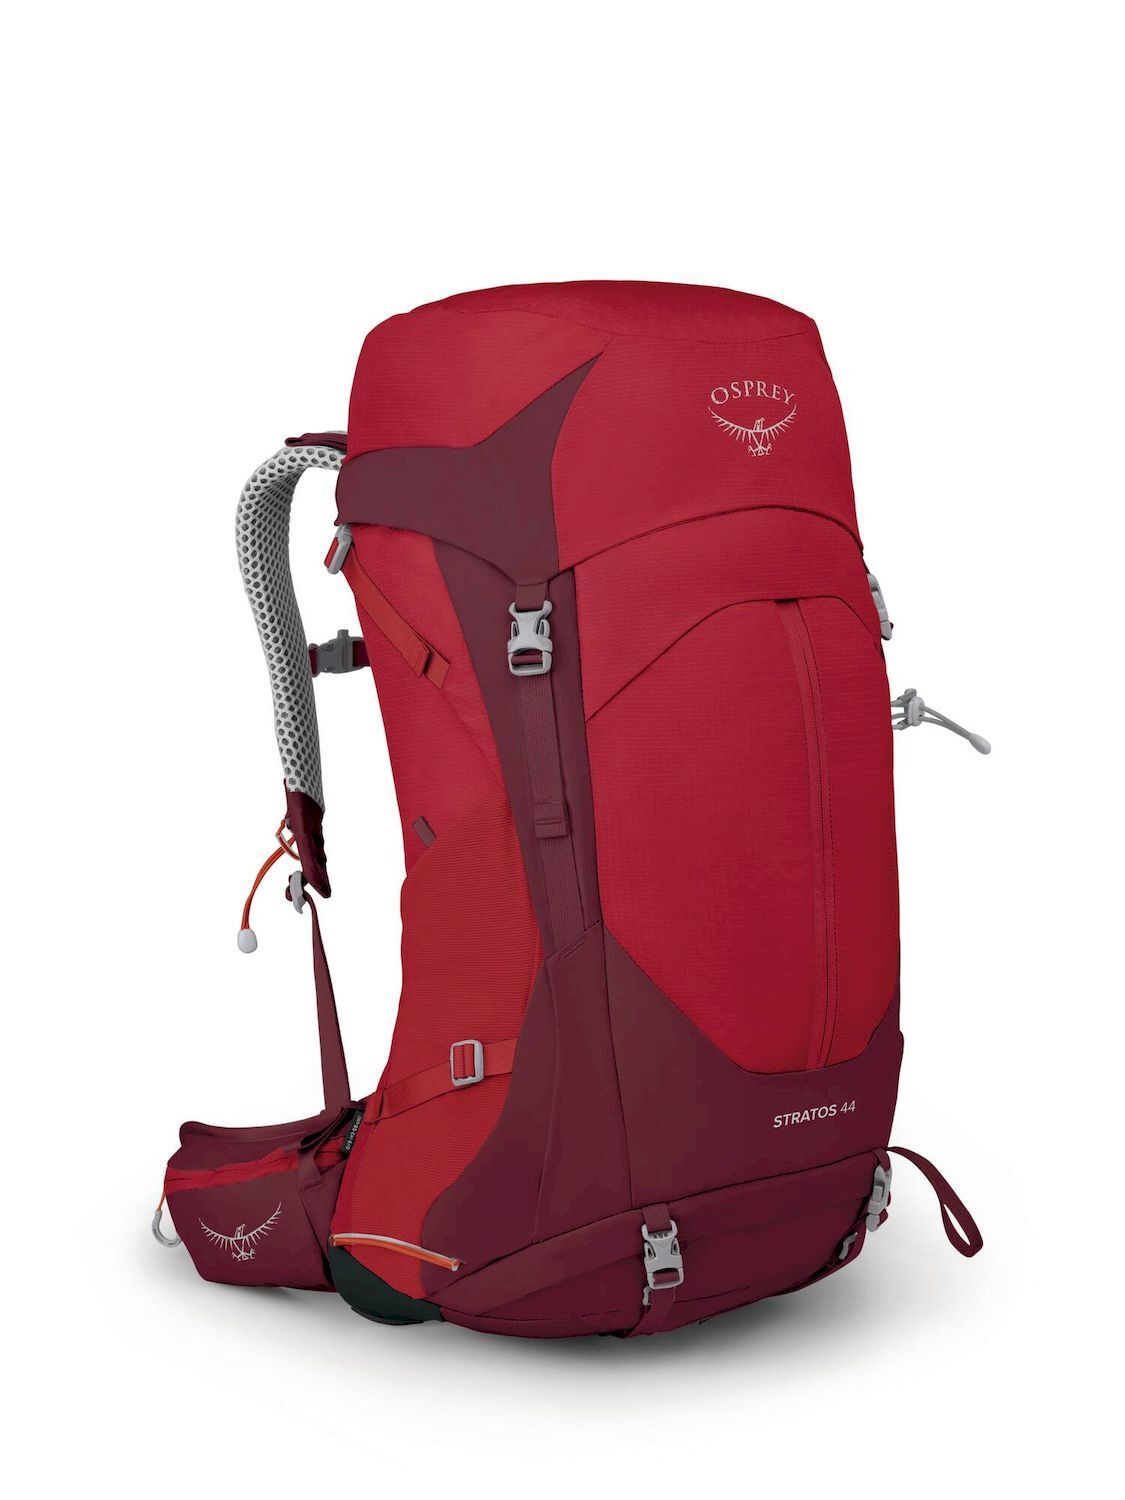 Osprey Stratos 44 - Walking backpack - Men's